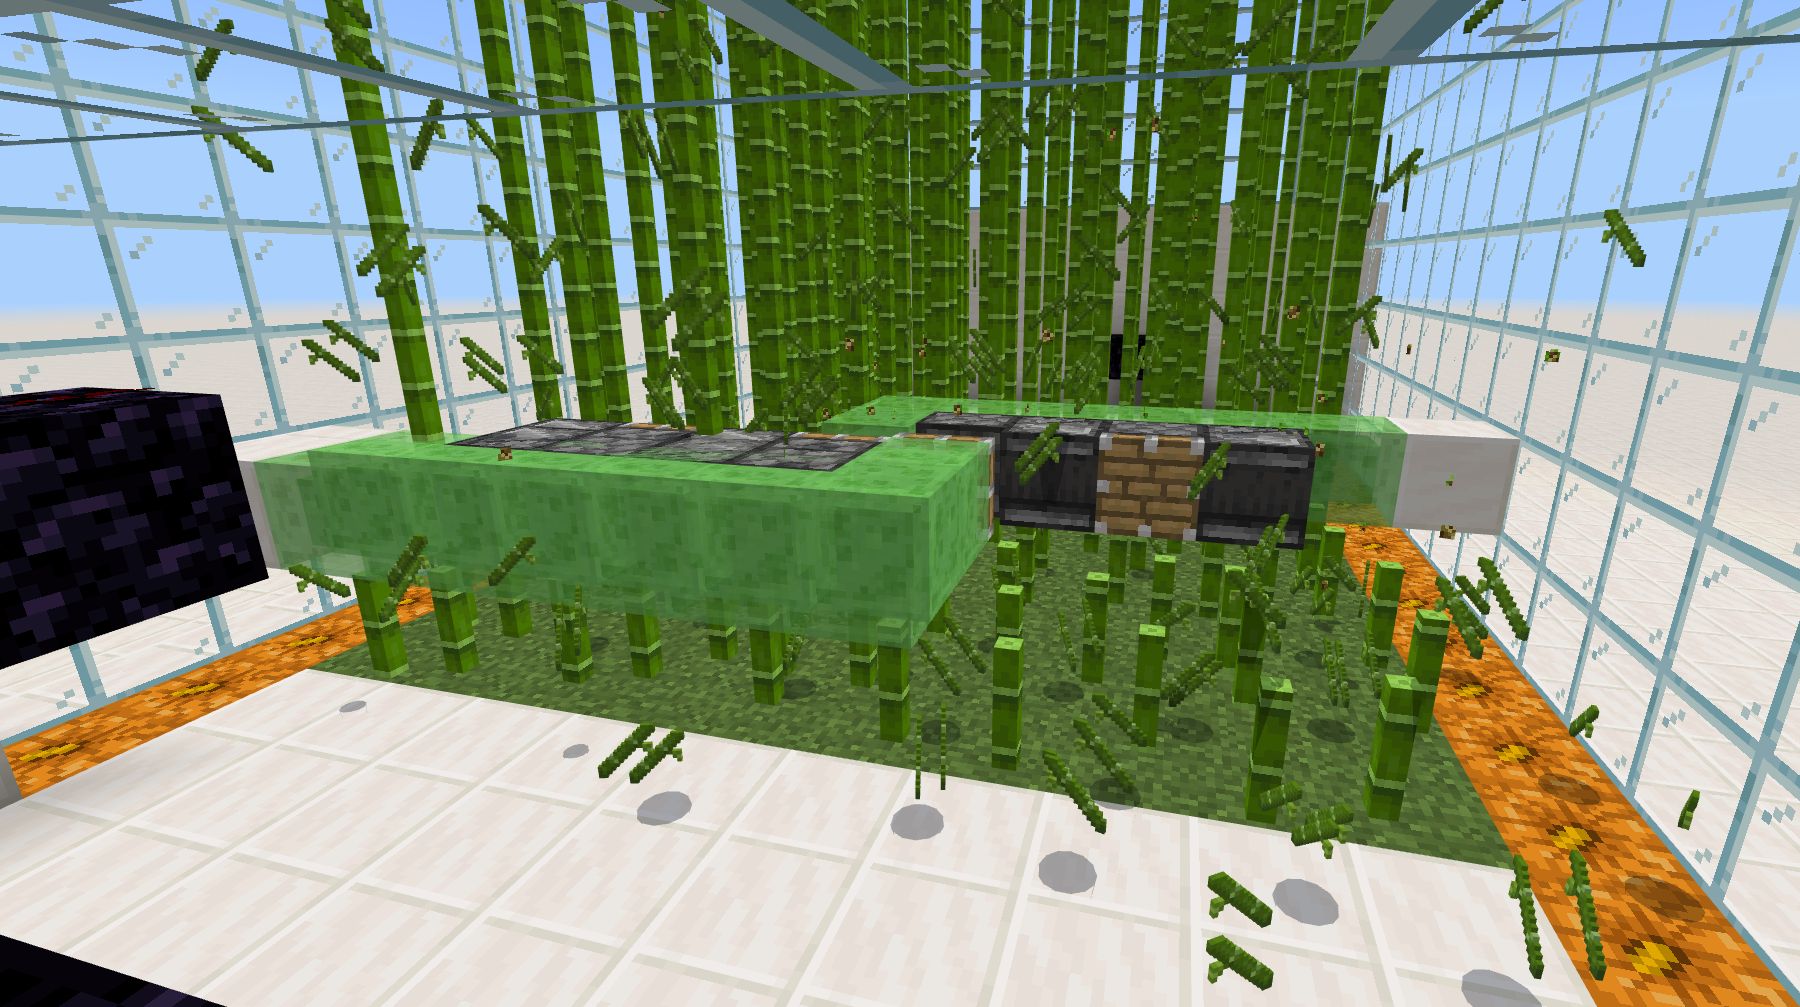 フライングマシン式竹自動収穫機を実際に動かしている様子1